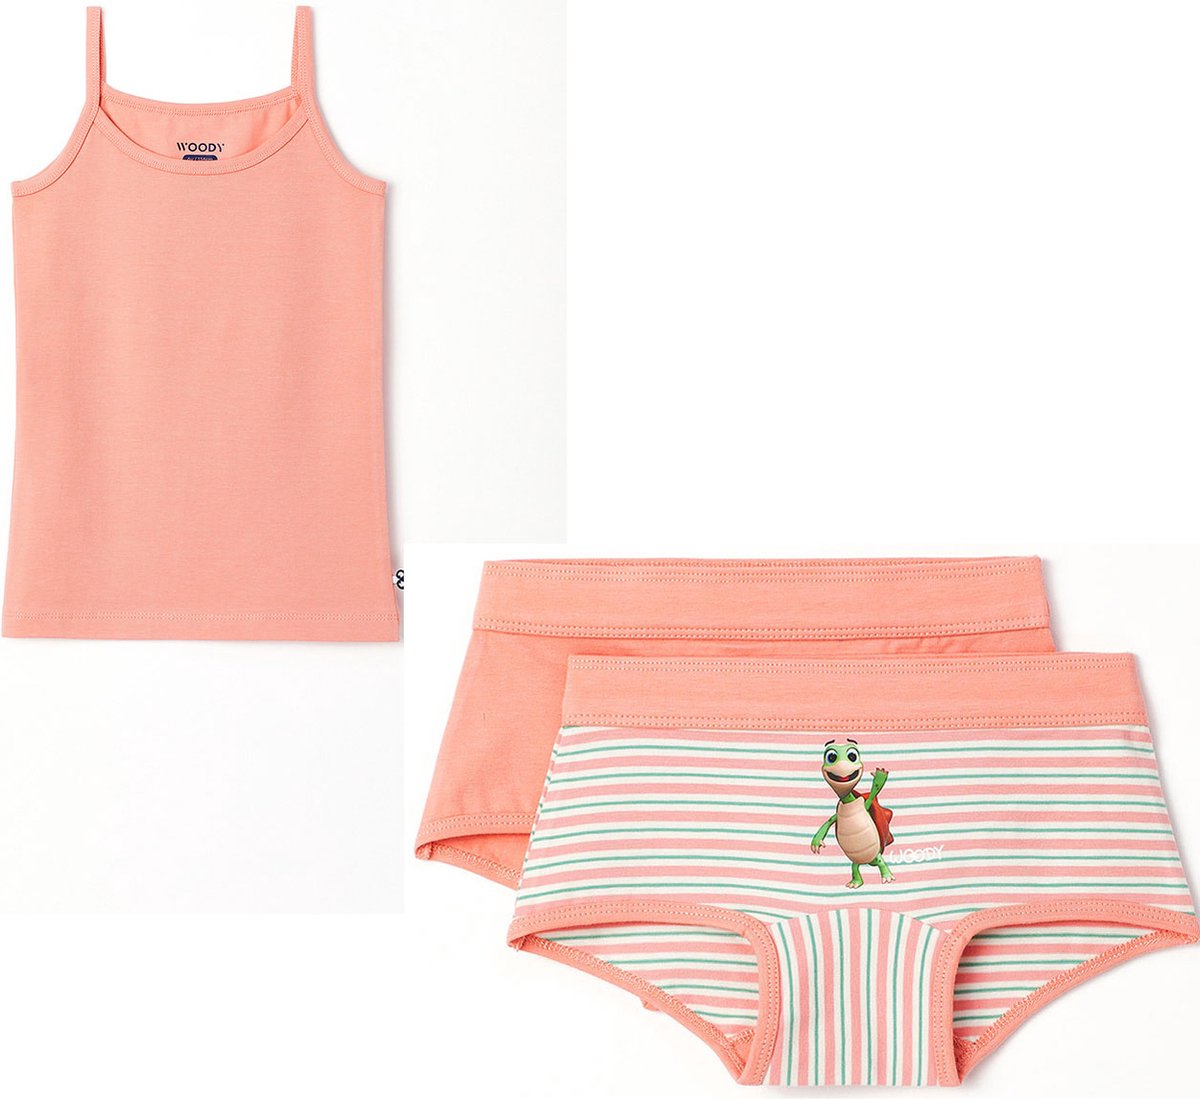 Woody ondergoed set meisjes - schildpad - roze - 1 hemdje en 2 boxers - maat 128